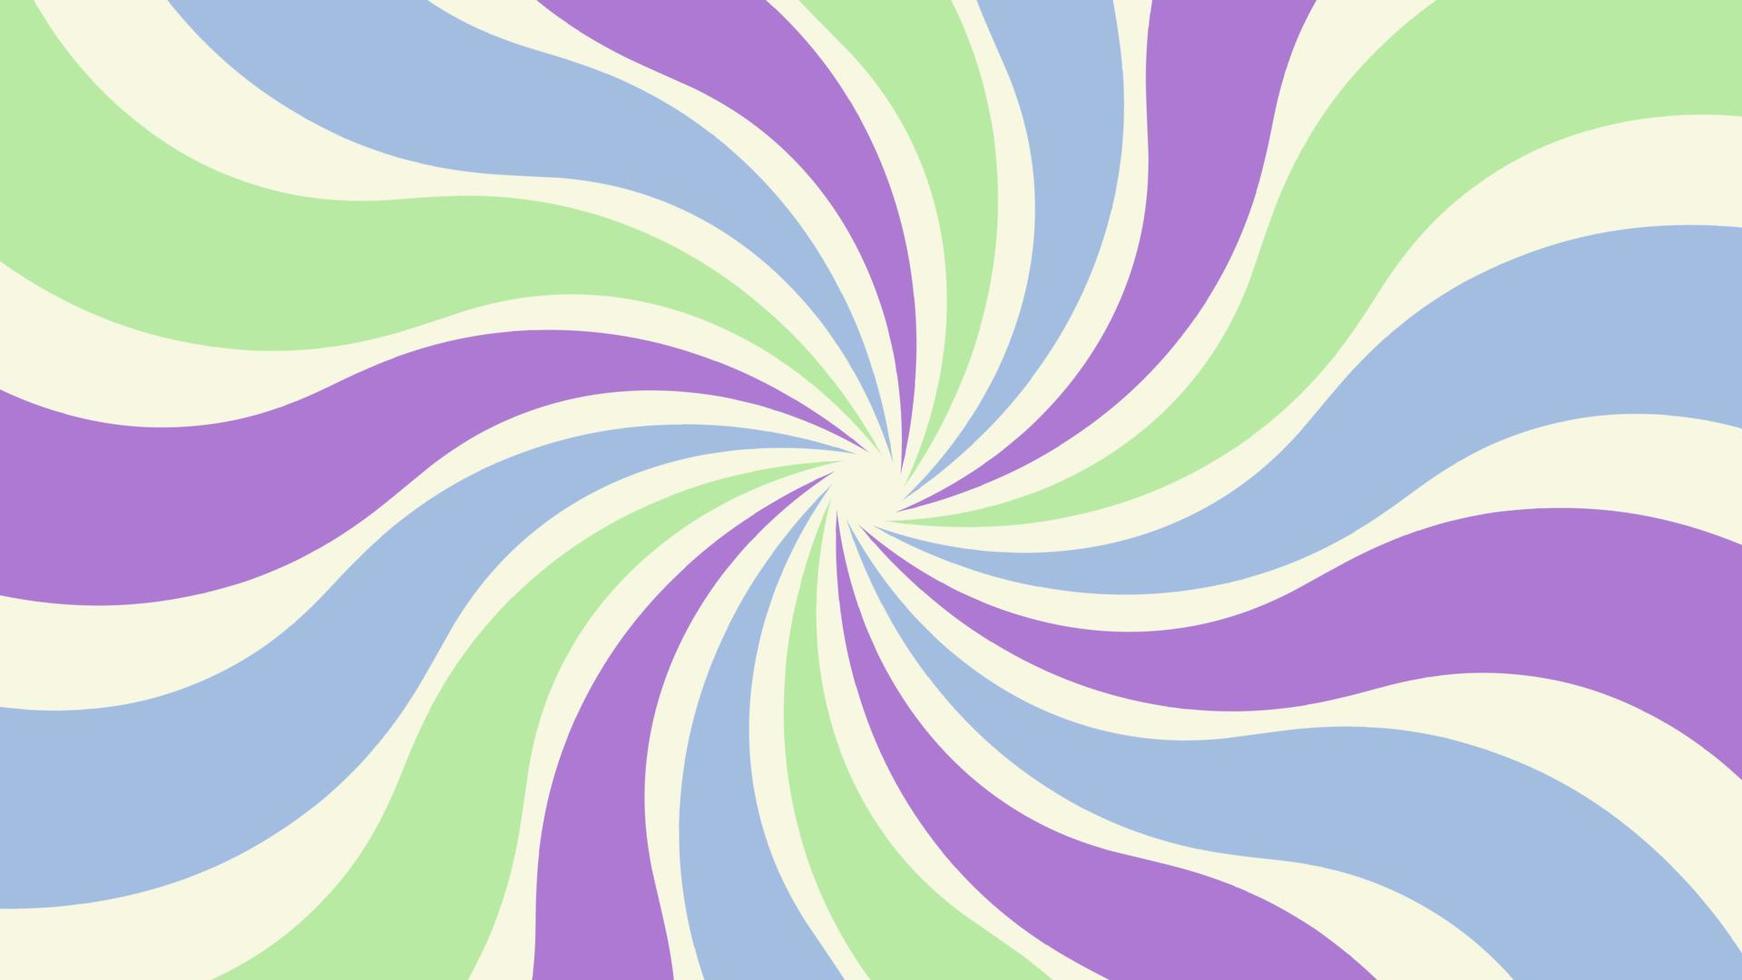 bunte Spin-Spirale-Hintergrundillustration, perfekt für Tapeten, Kulissen, Postkarten, Hintergrund für Ihr Design vektor